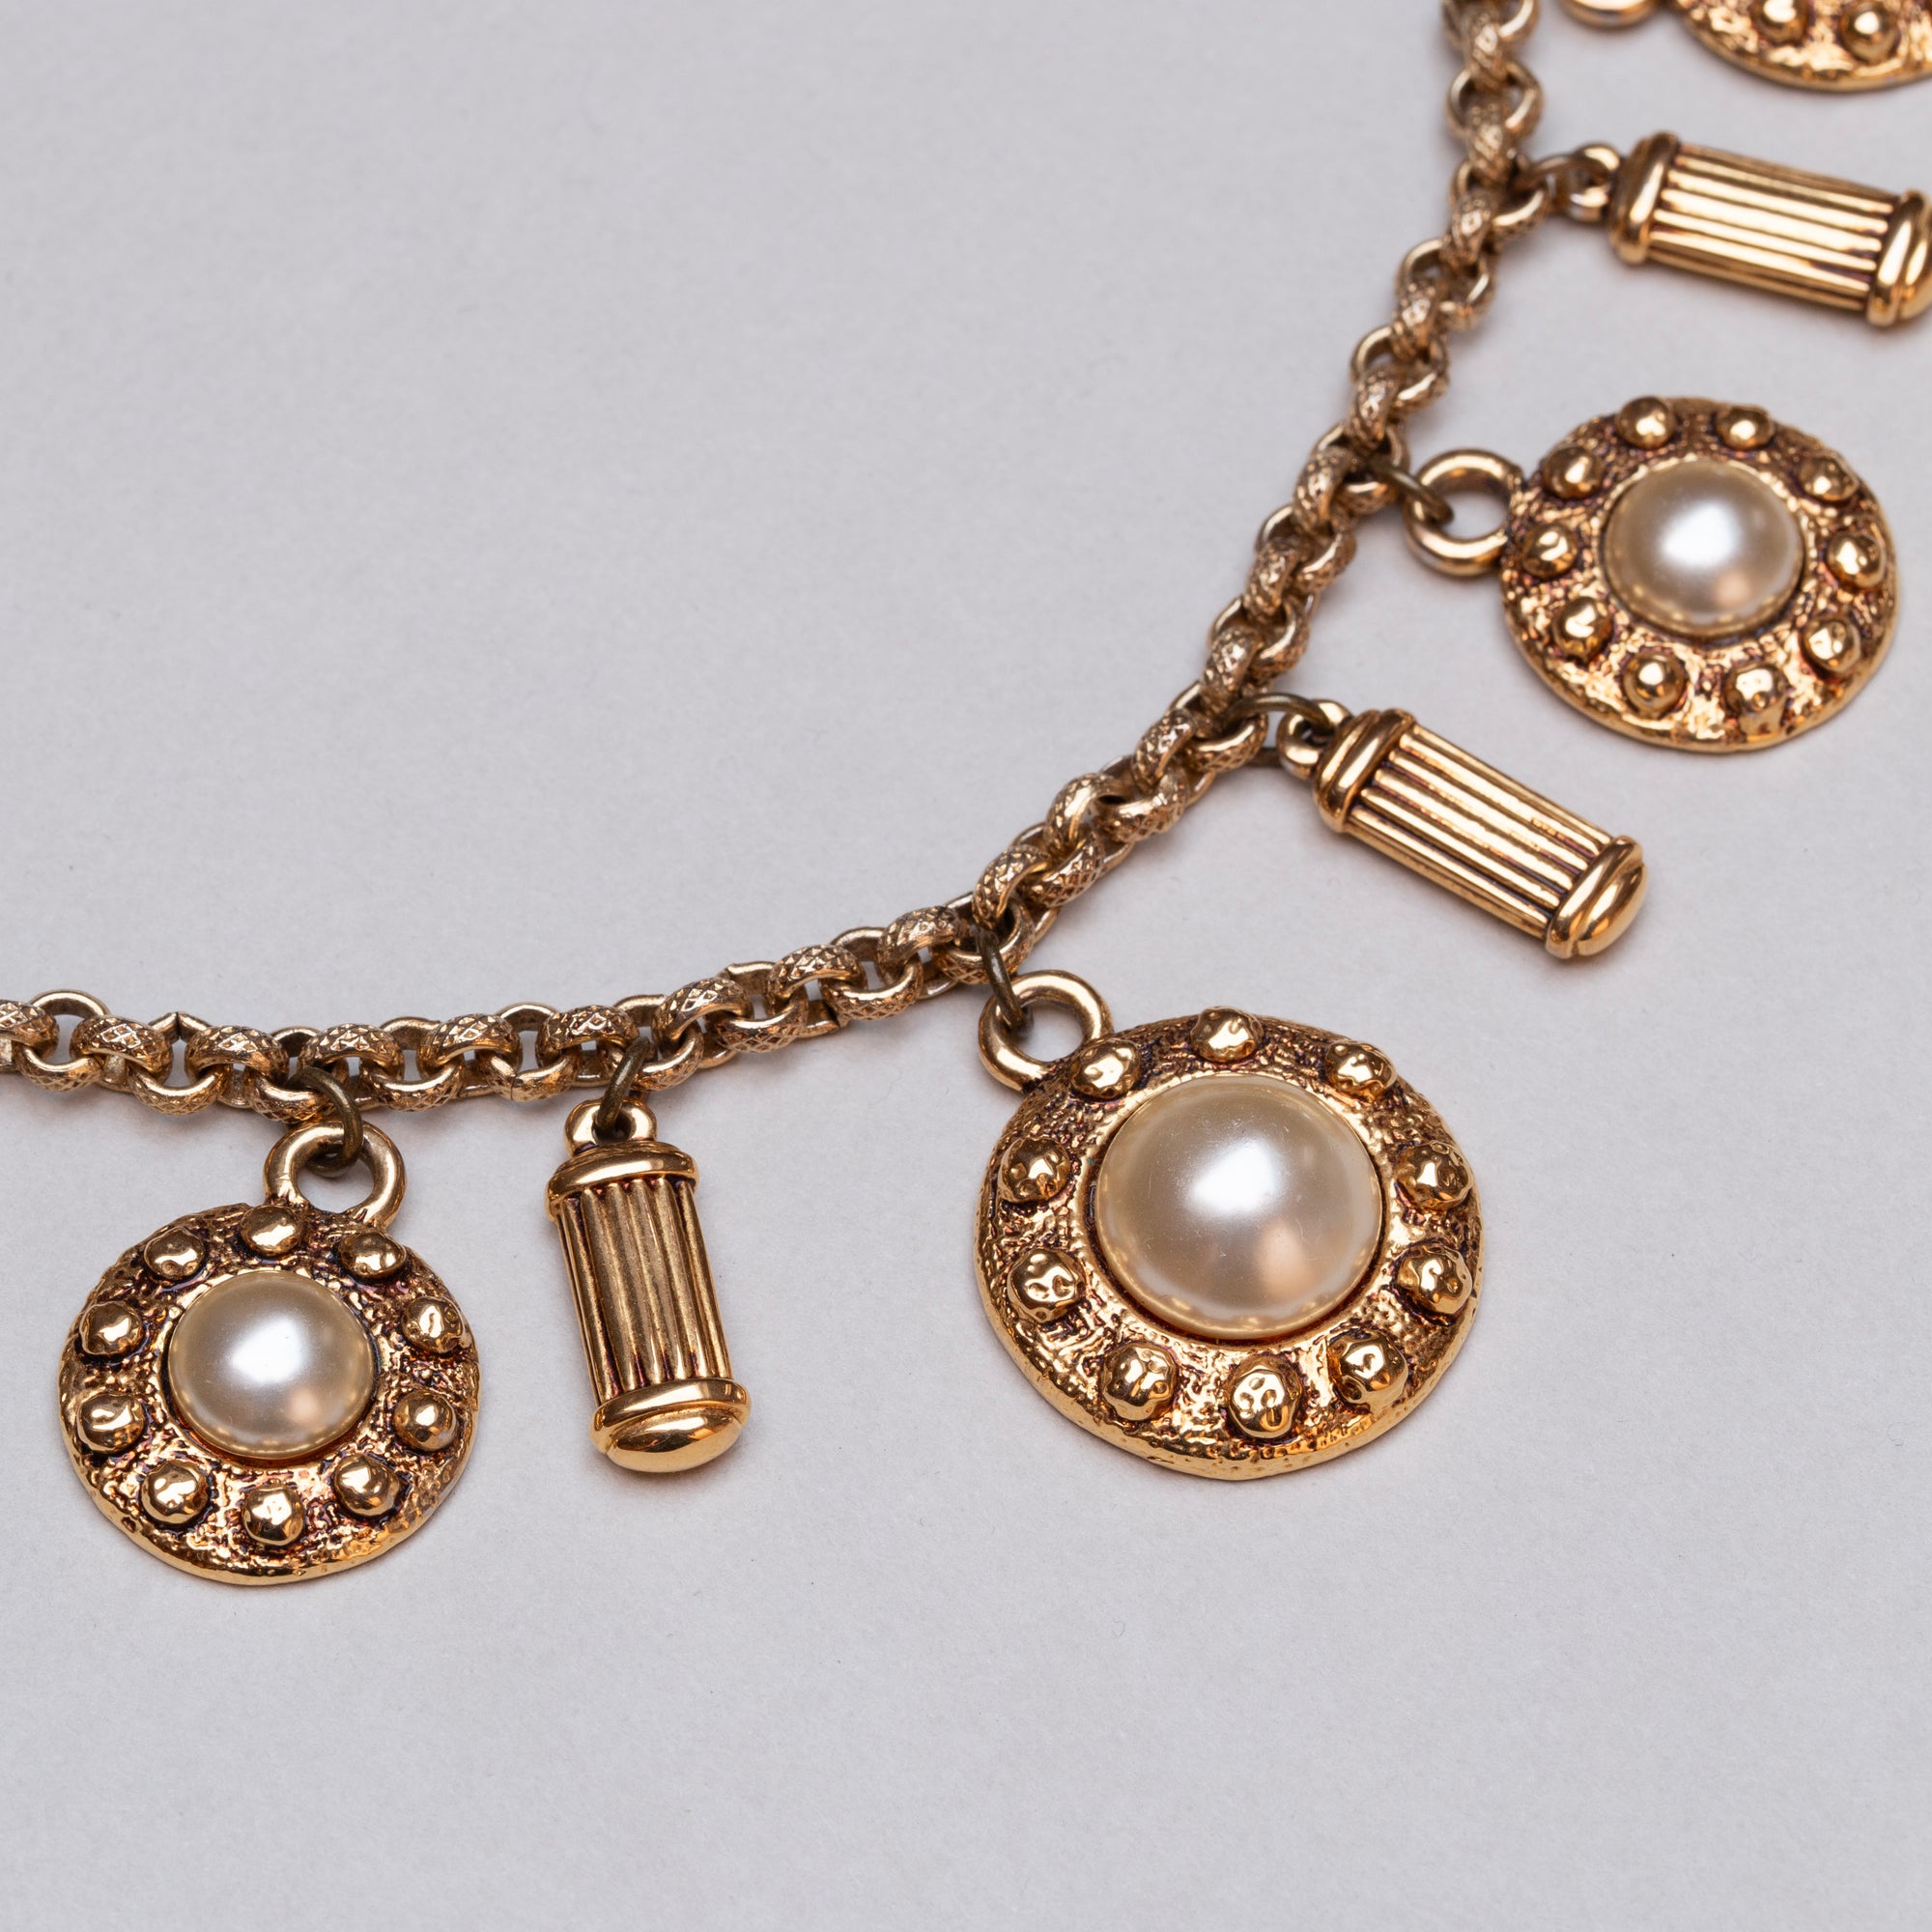 Vintage Alexandre de Paris Gold Chain Necklace with Pearls